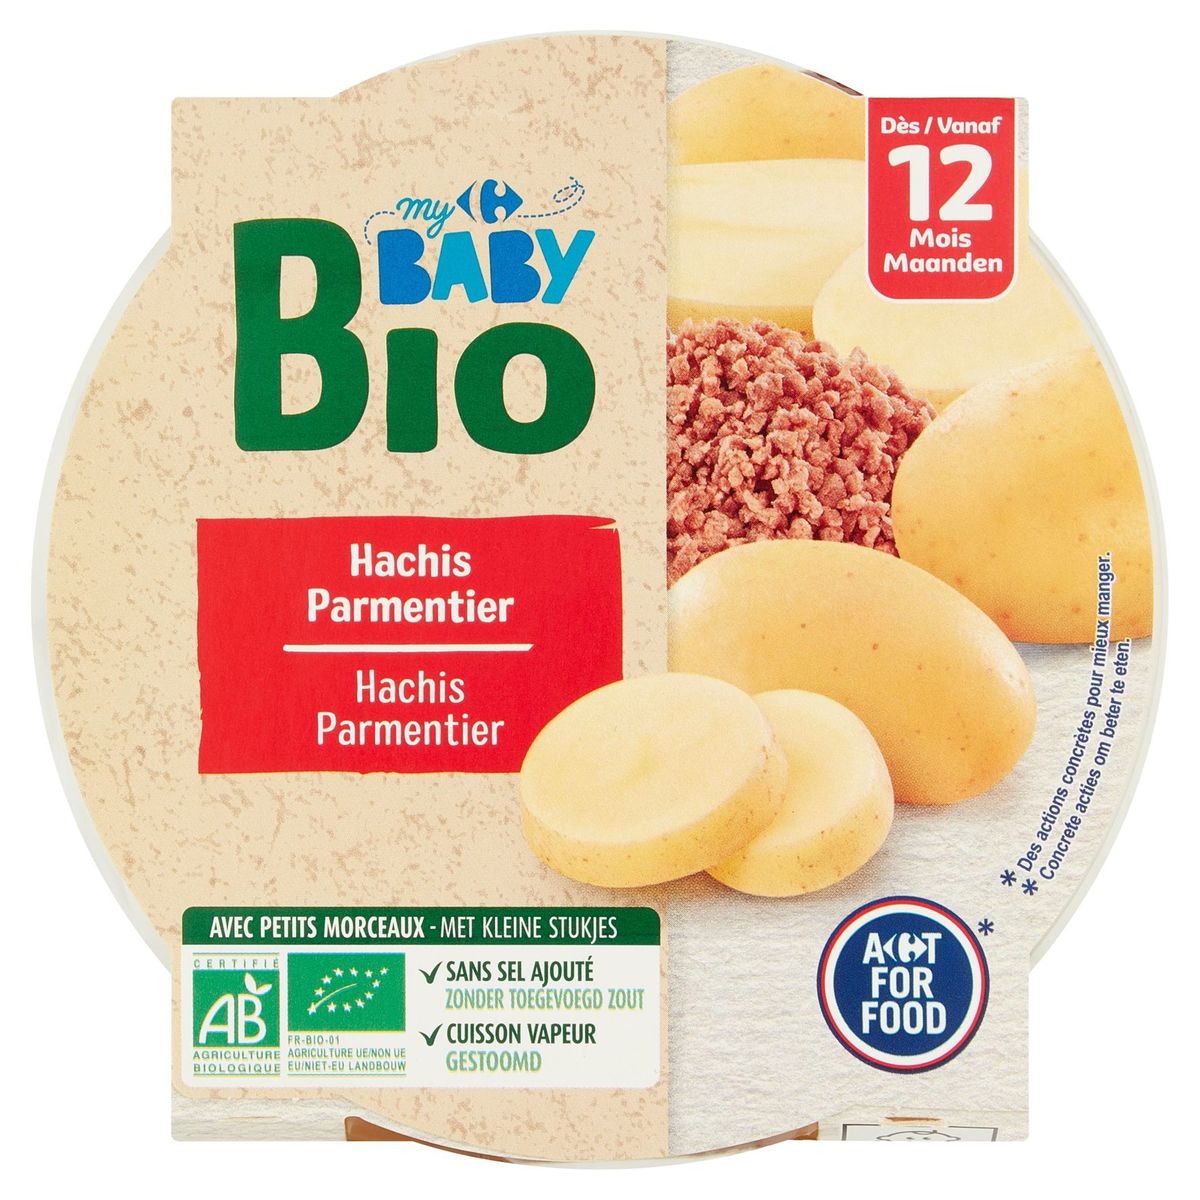 Carrefour Baby Bio Hachis Parmentier vanaf 12 Maanden 230 g